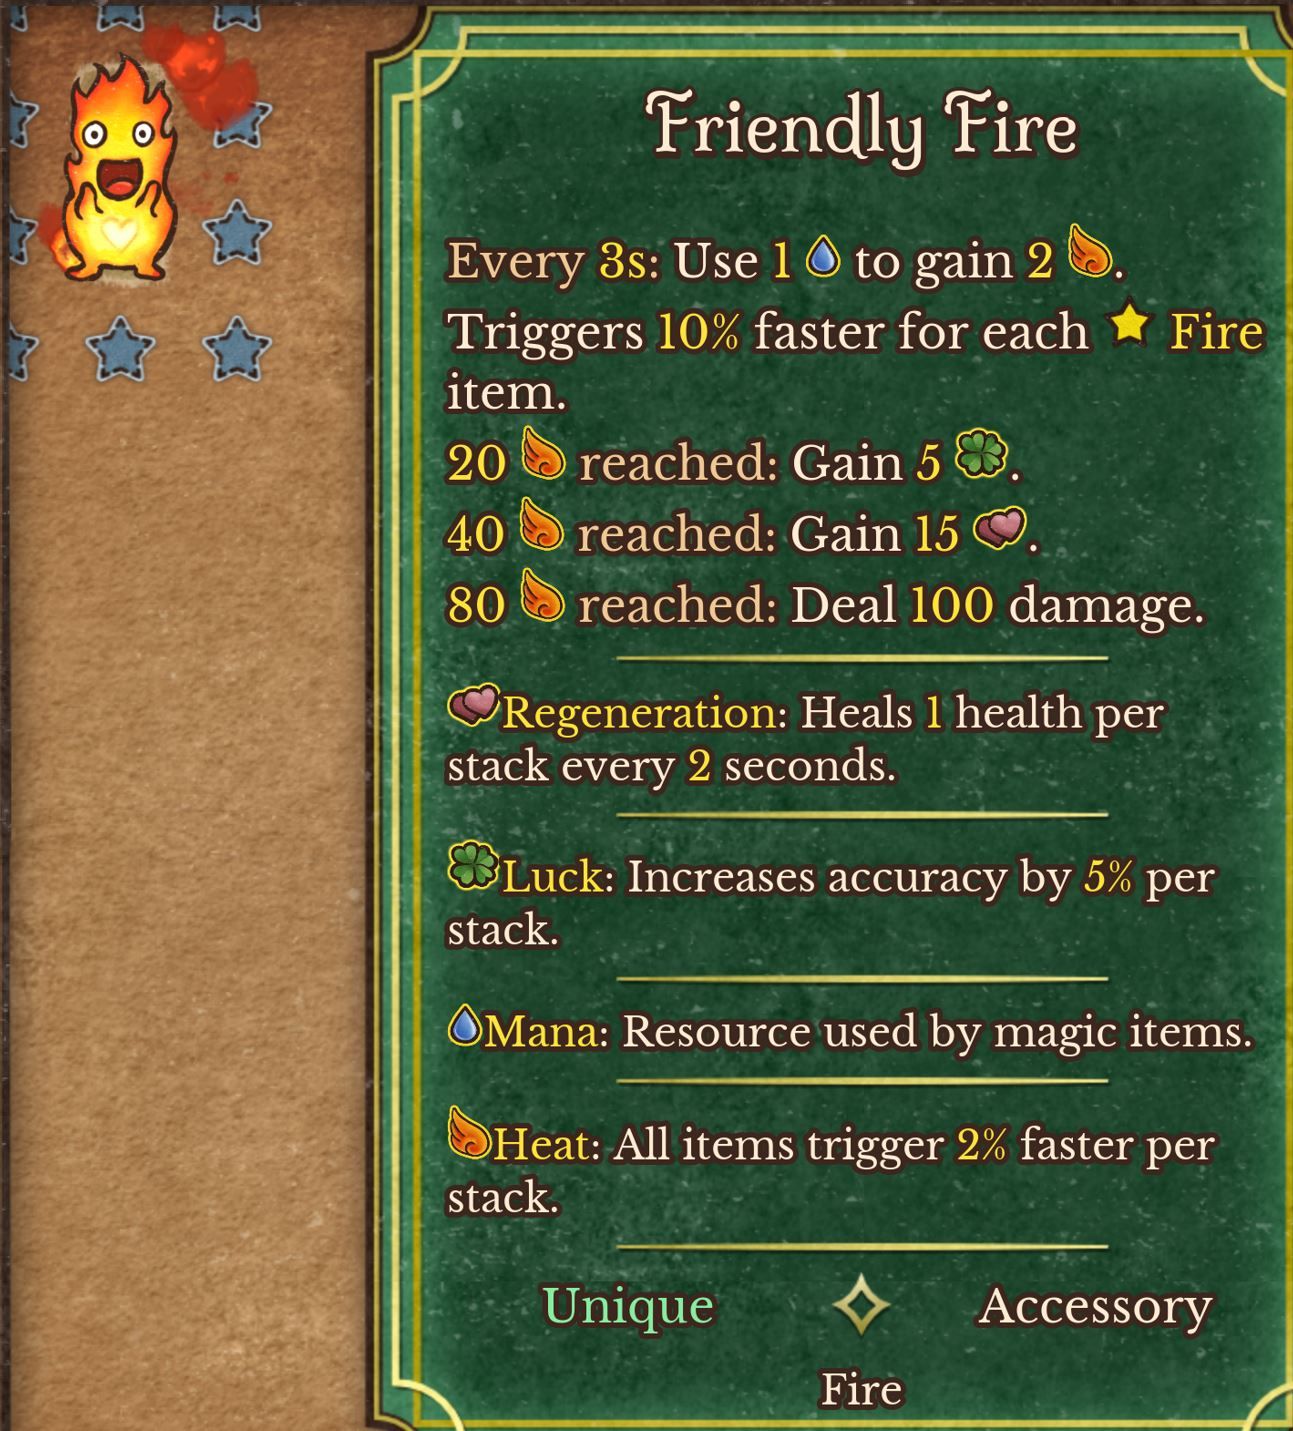 Backpack Battles: Pyromane Build Guide - Feuerbändiger